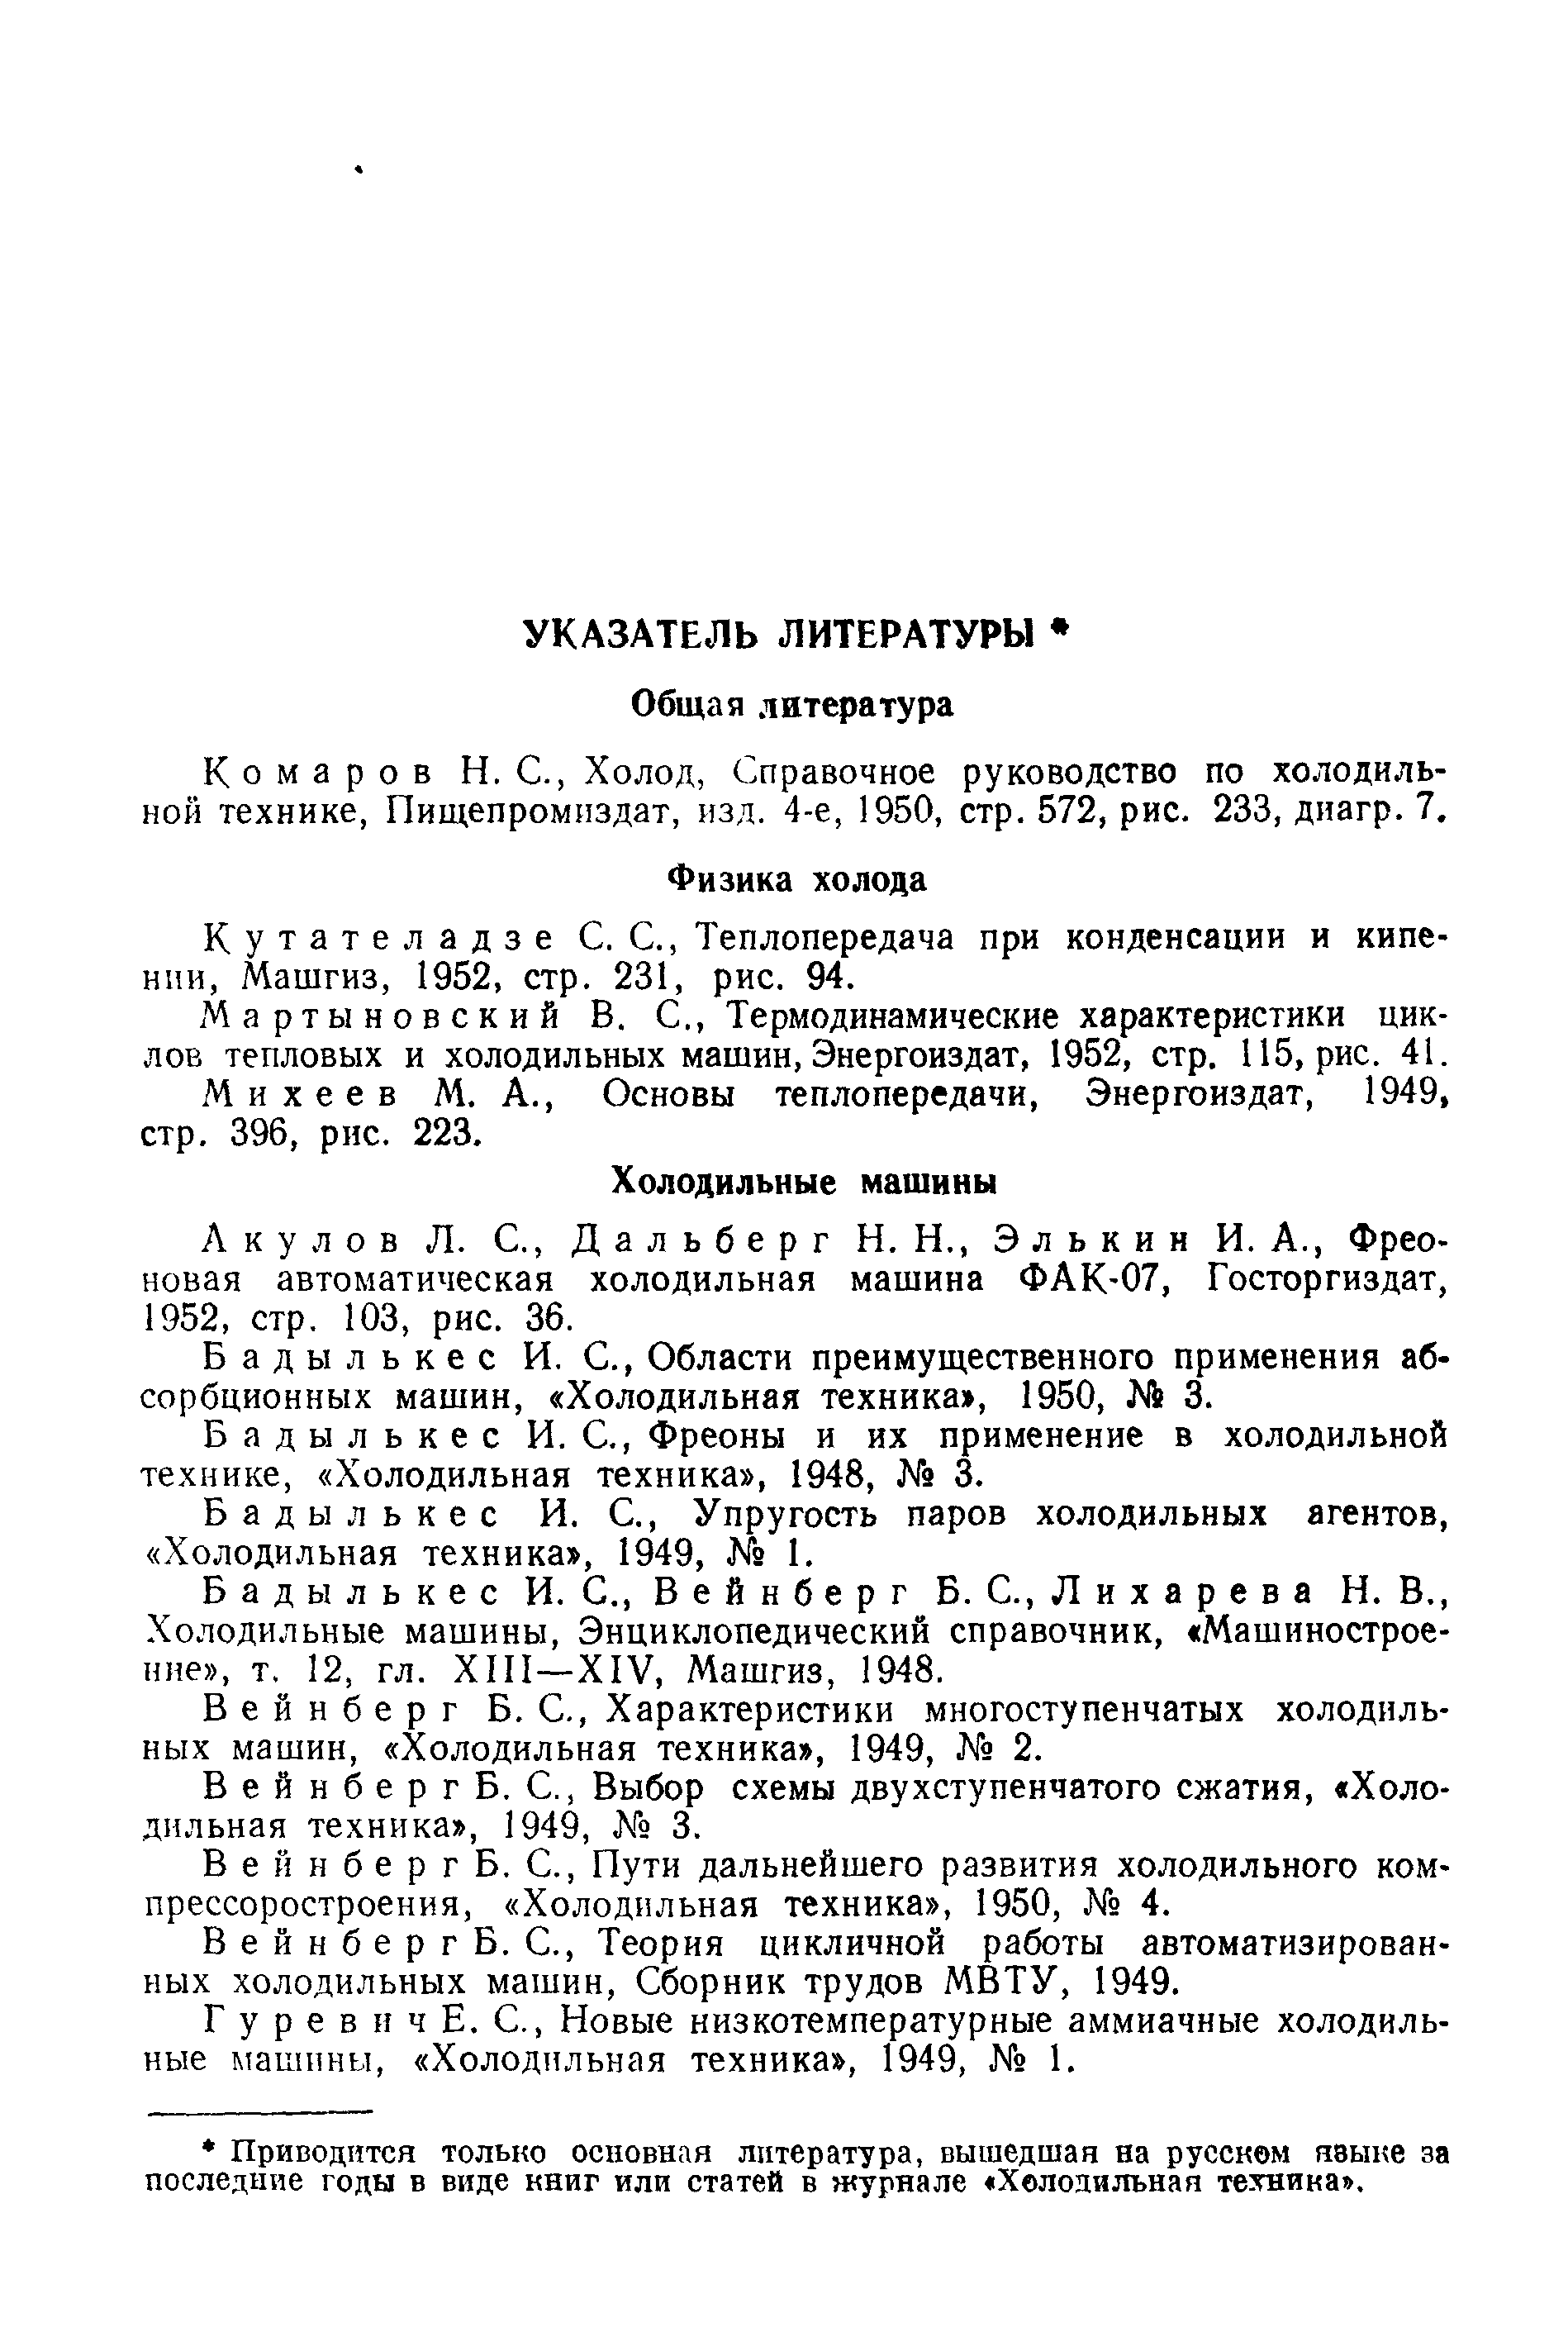 Кутателадзе С. С., Теплопередача при конденсации и кипении, Машгиз, 1952, стр. 231, рис. 94.